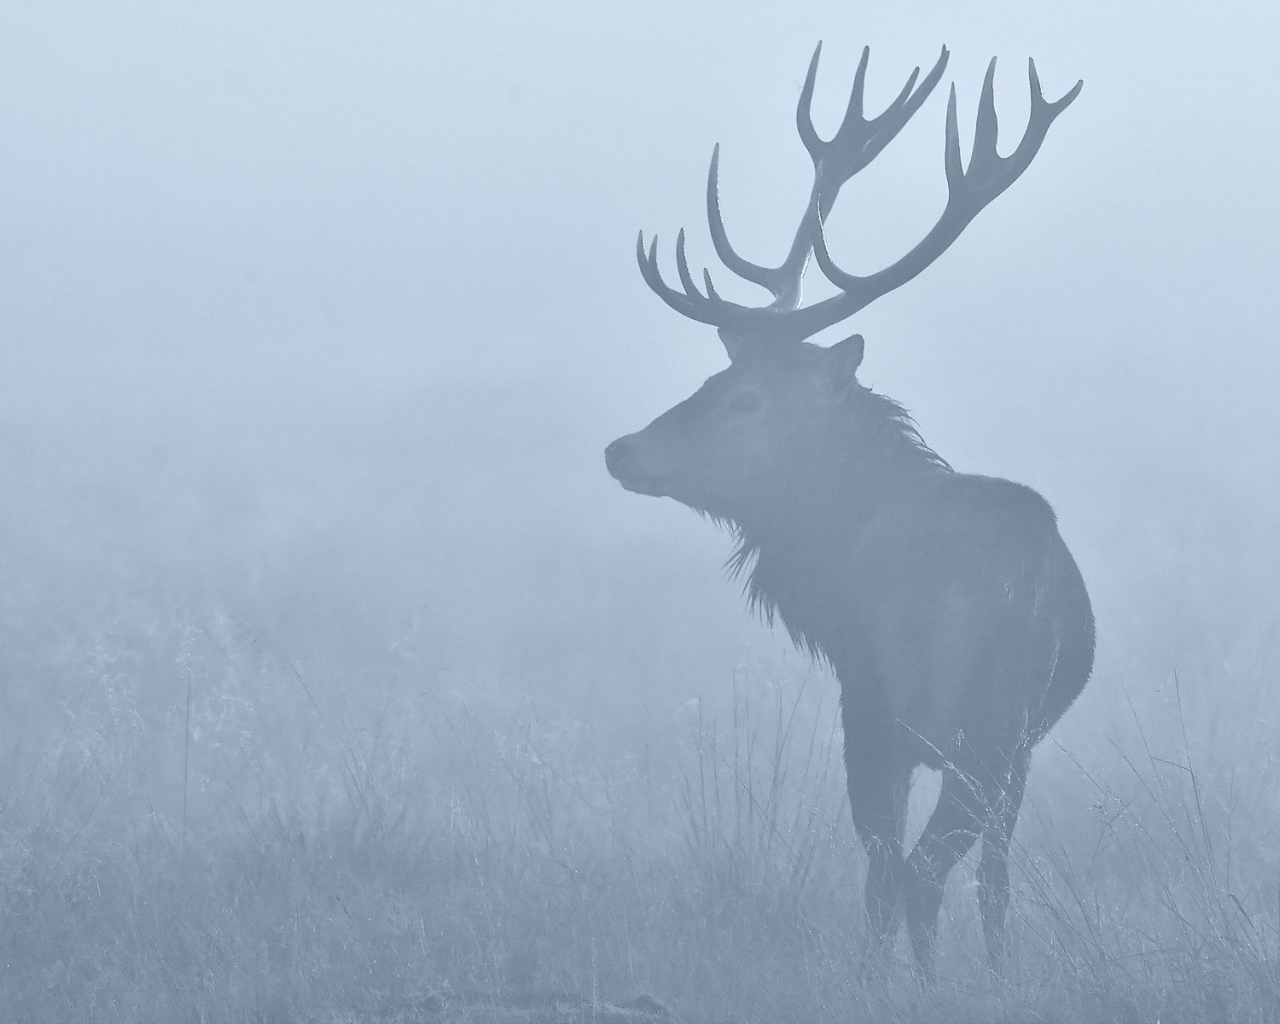 Deer in the morning mist